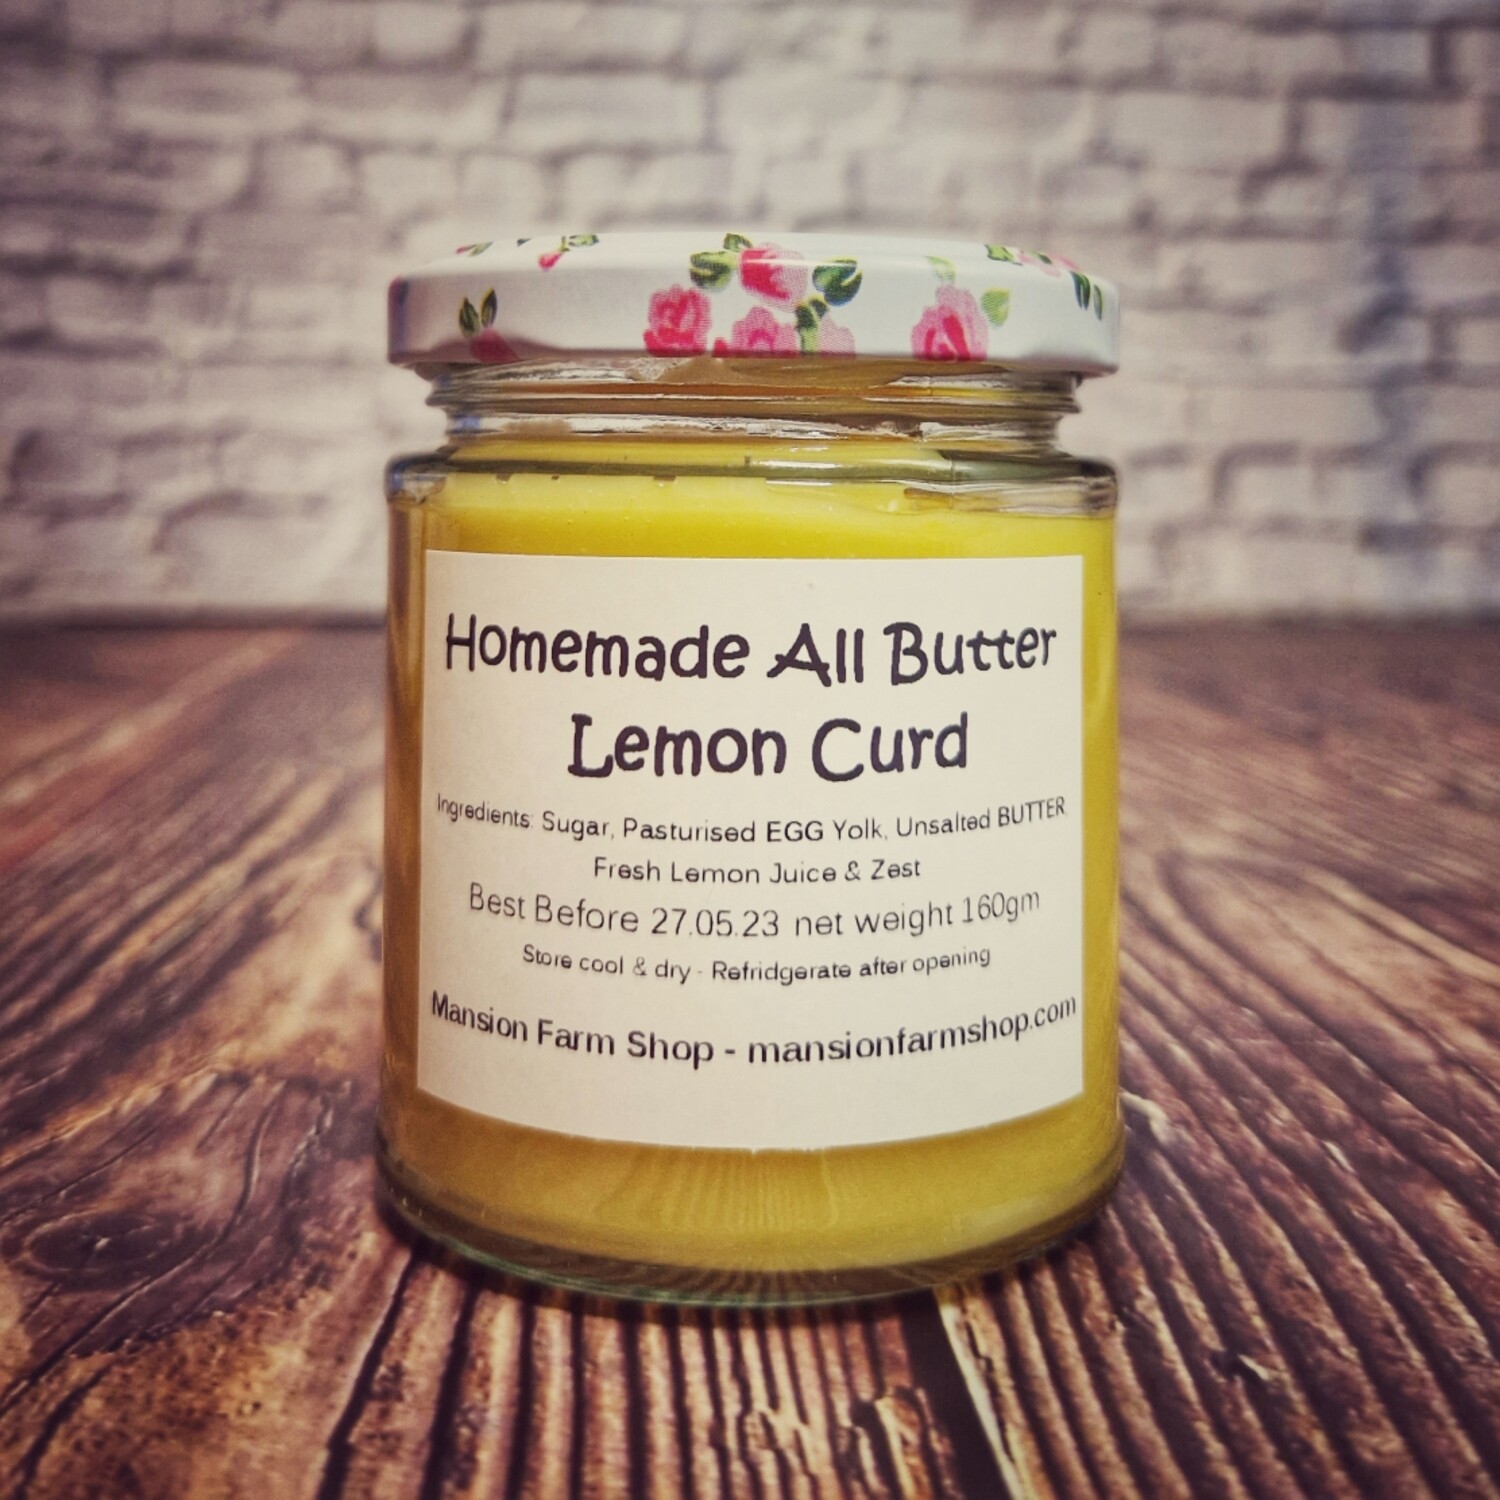 Homemade All Butter Lemon Curd